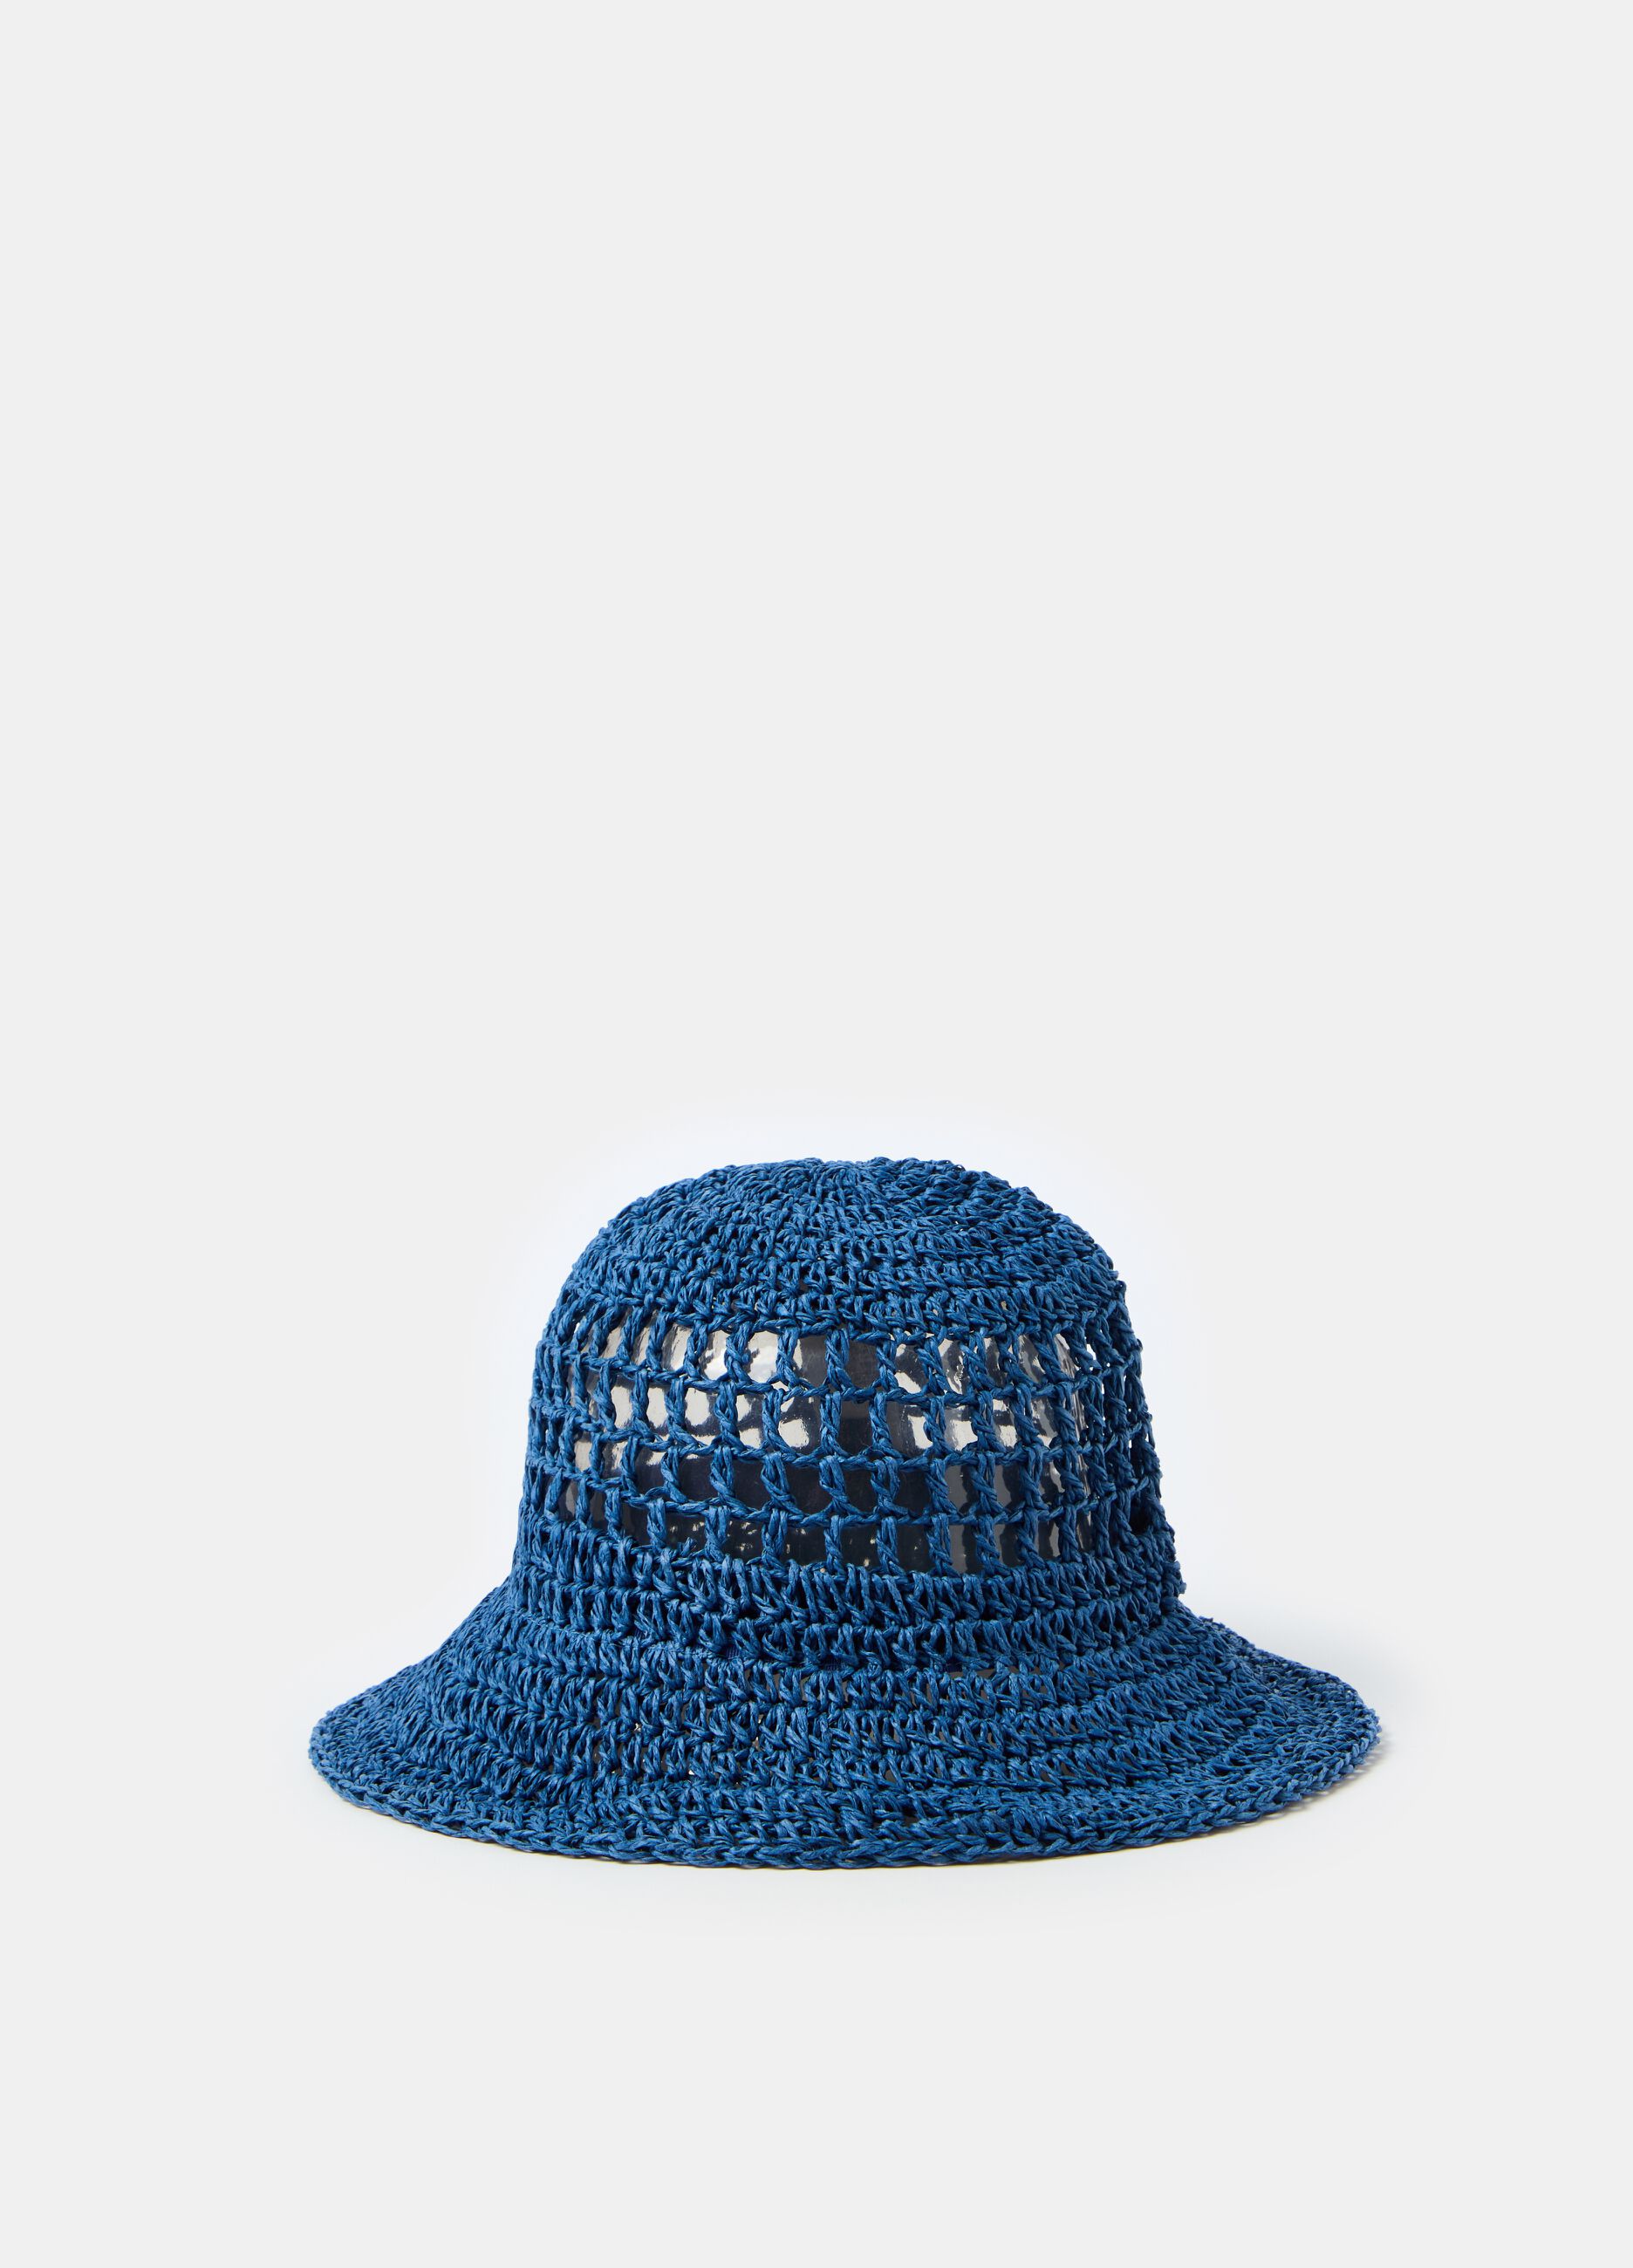 Openwork raffia hat